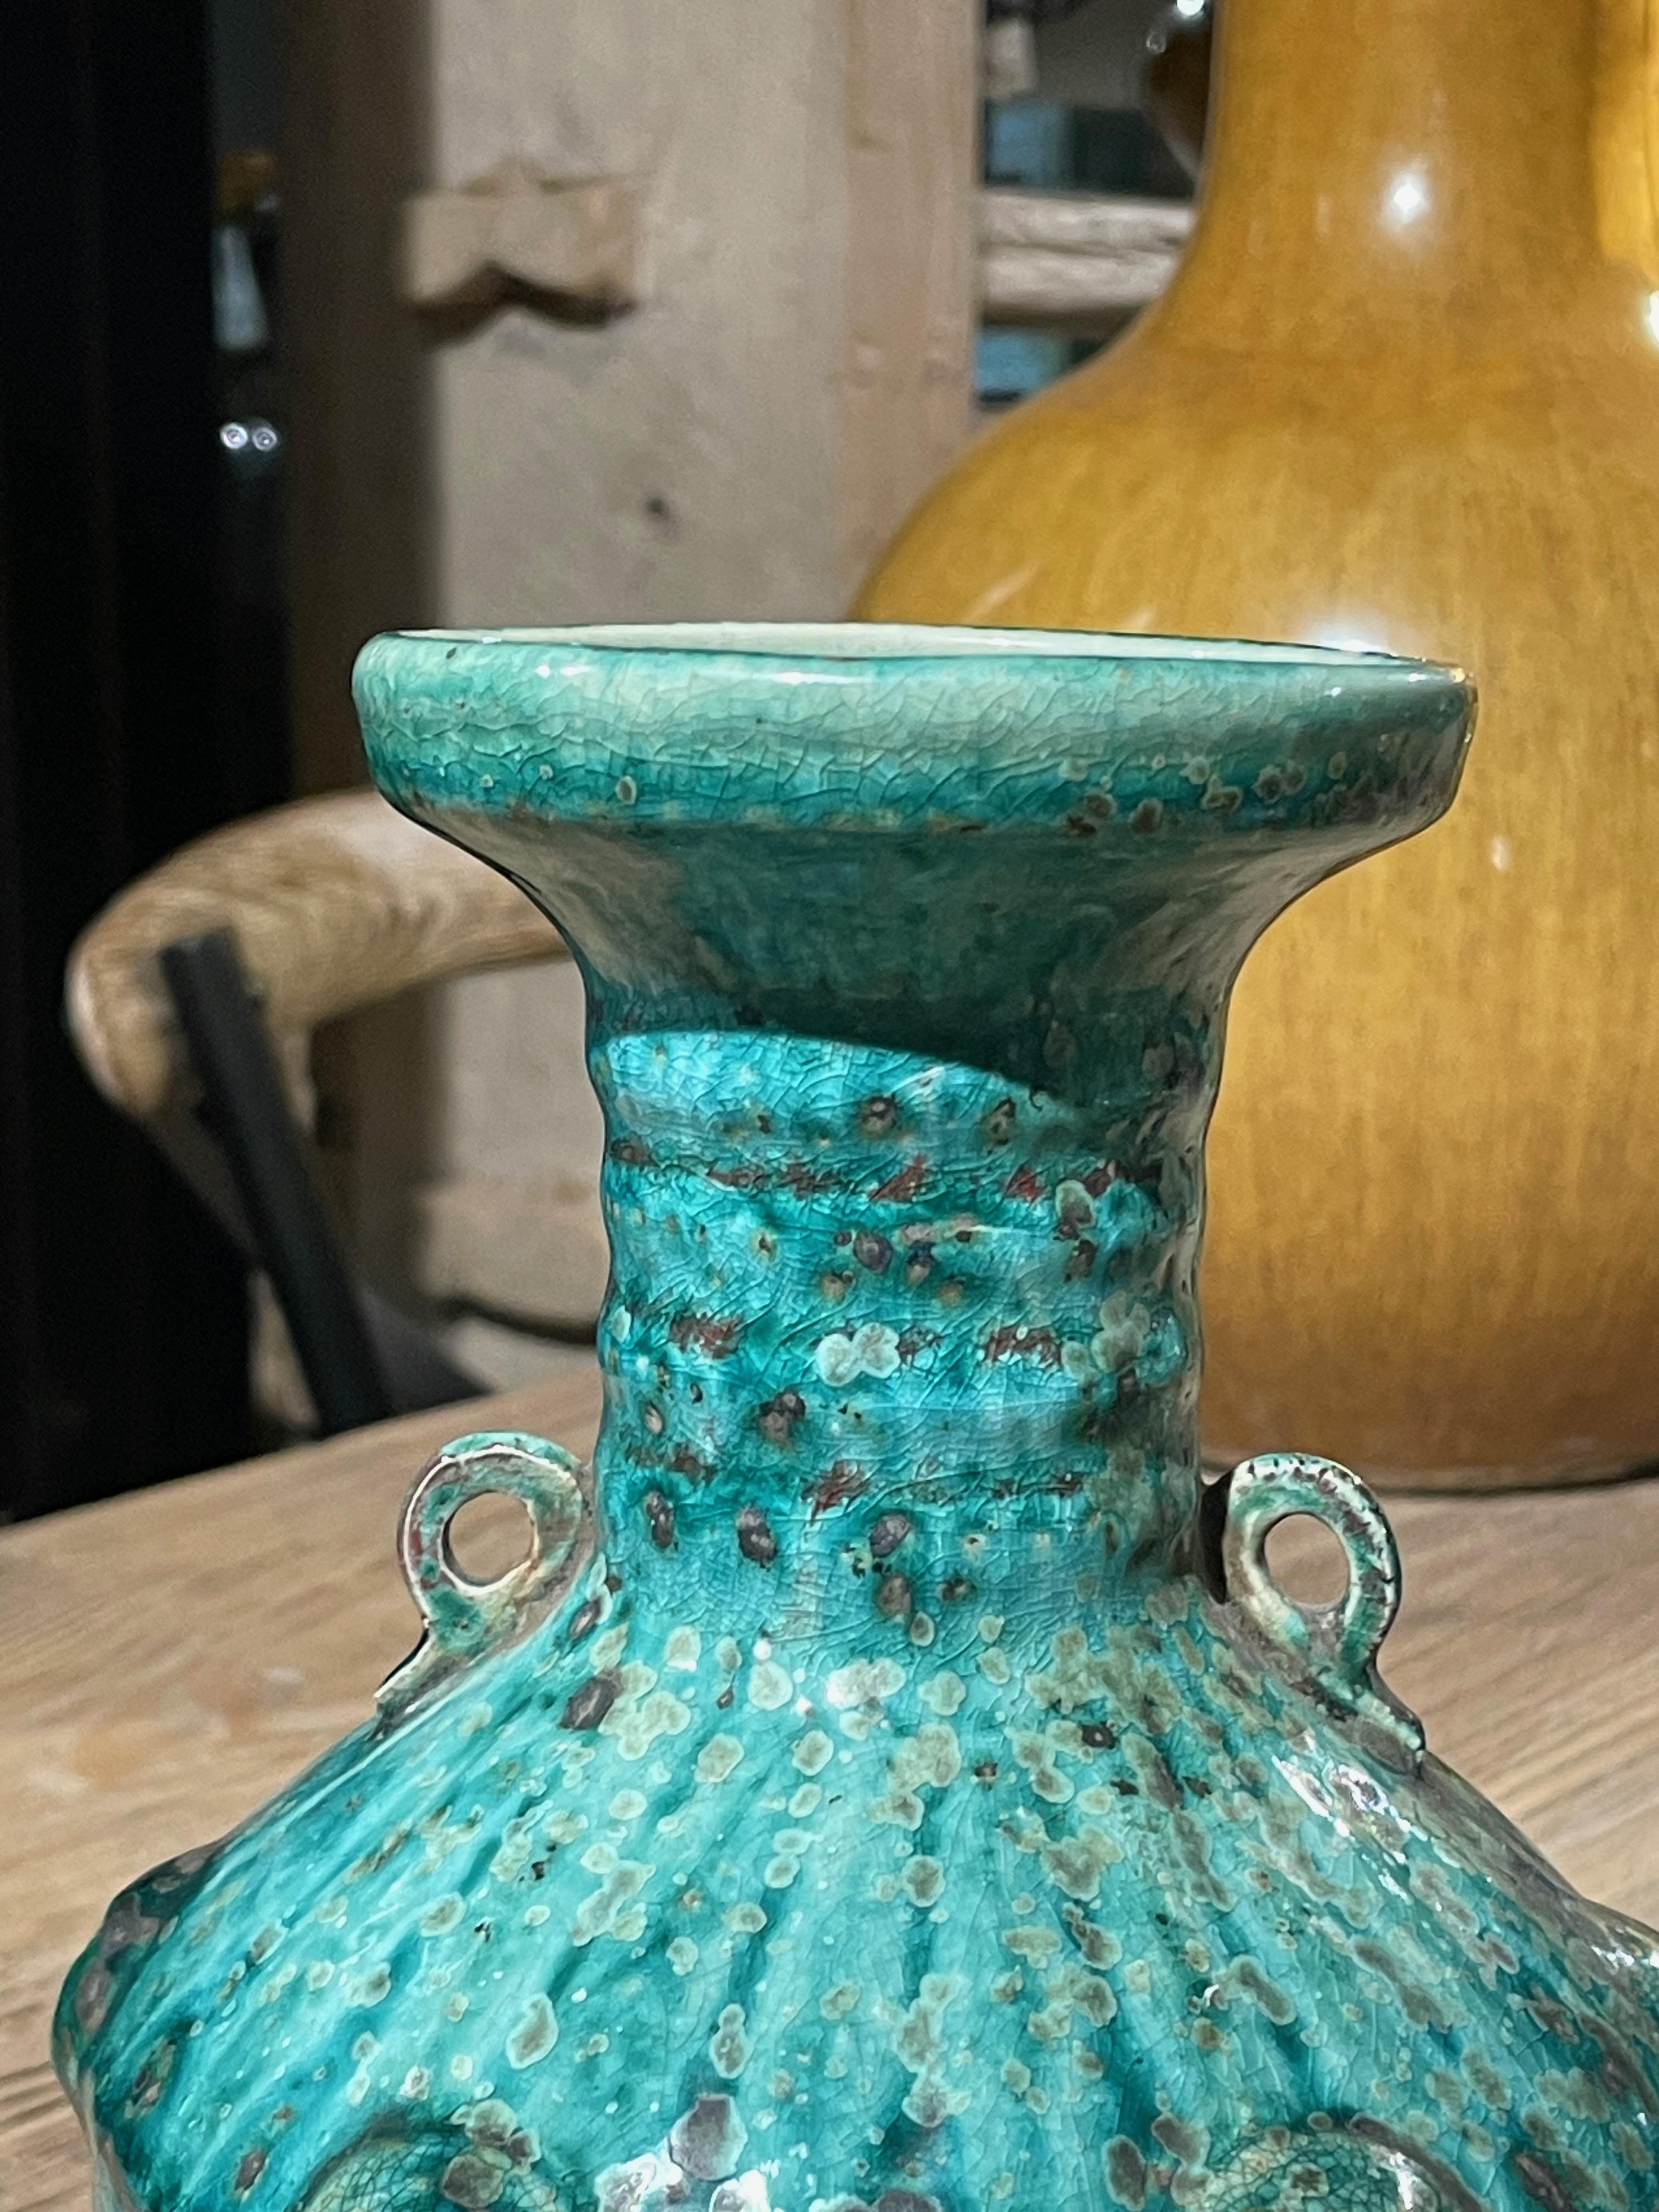 Vase chinois contemporain de couleur turquoise tachetée avec glaçure craquelée.
Motif de nervures horizontales au niveau du col du vase.
Deux petites poignées.
Motif vertical en relief définissant les sections du vase.
Design/One texturé à